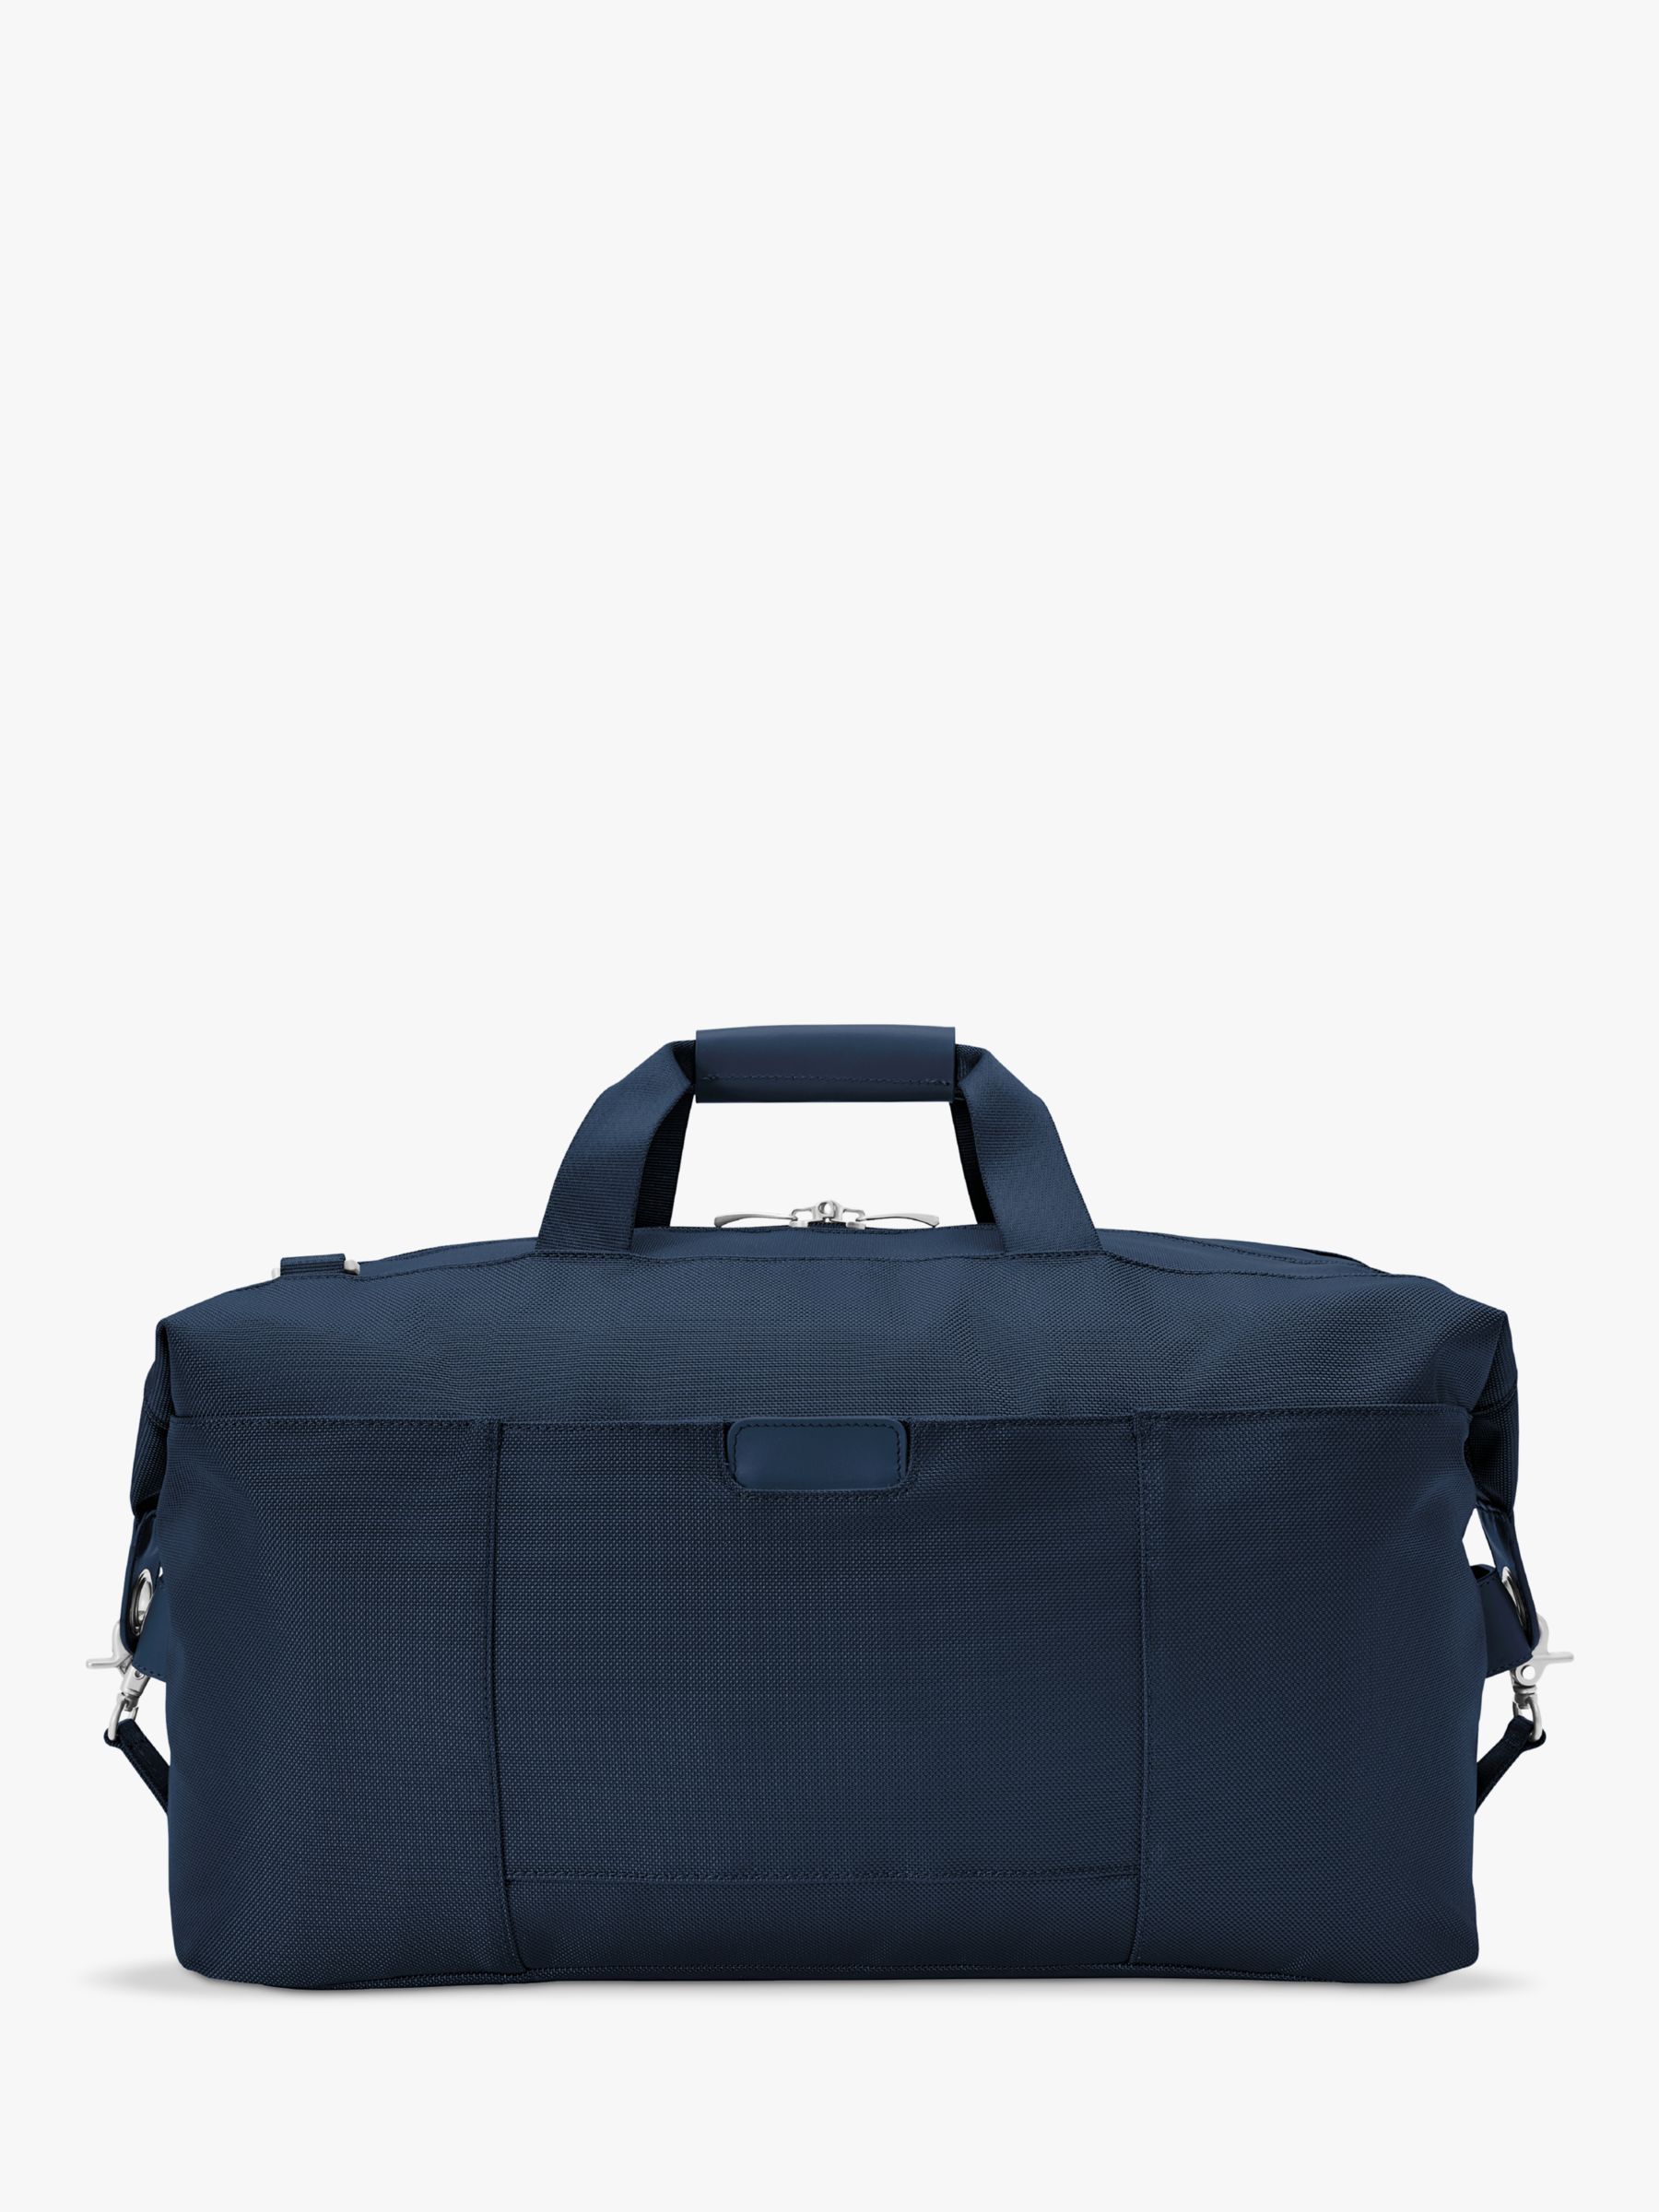 Briggs & Riley Baseline Weekender Duffle Bag, Navy at John Lewis & Partners